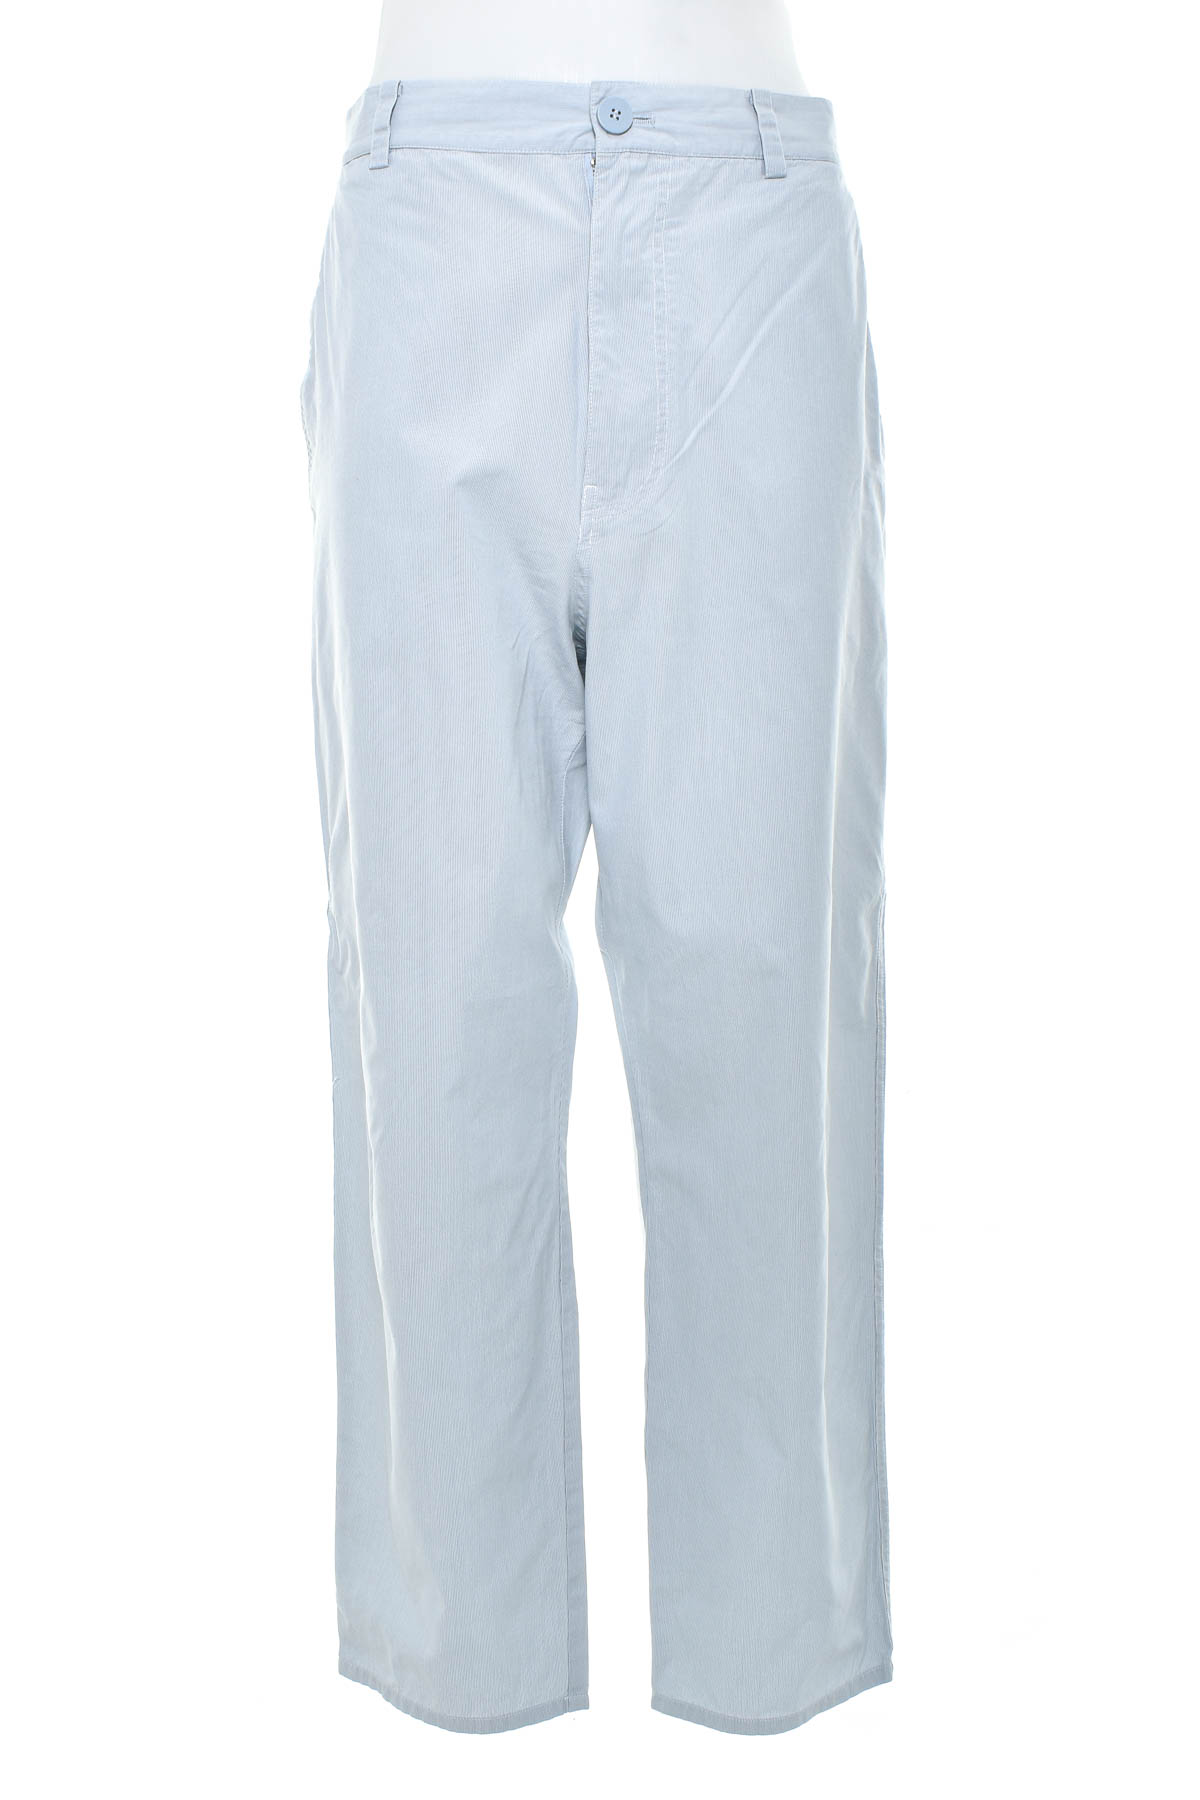 Pantalon pentru bărbați - COS - 0